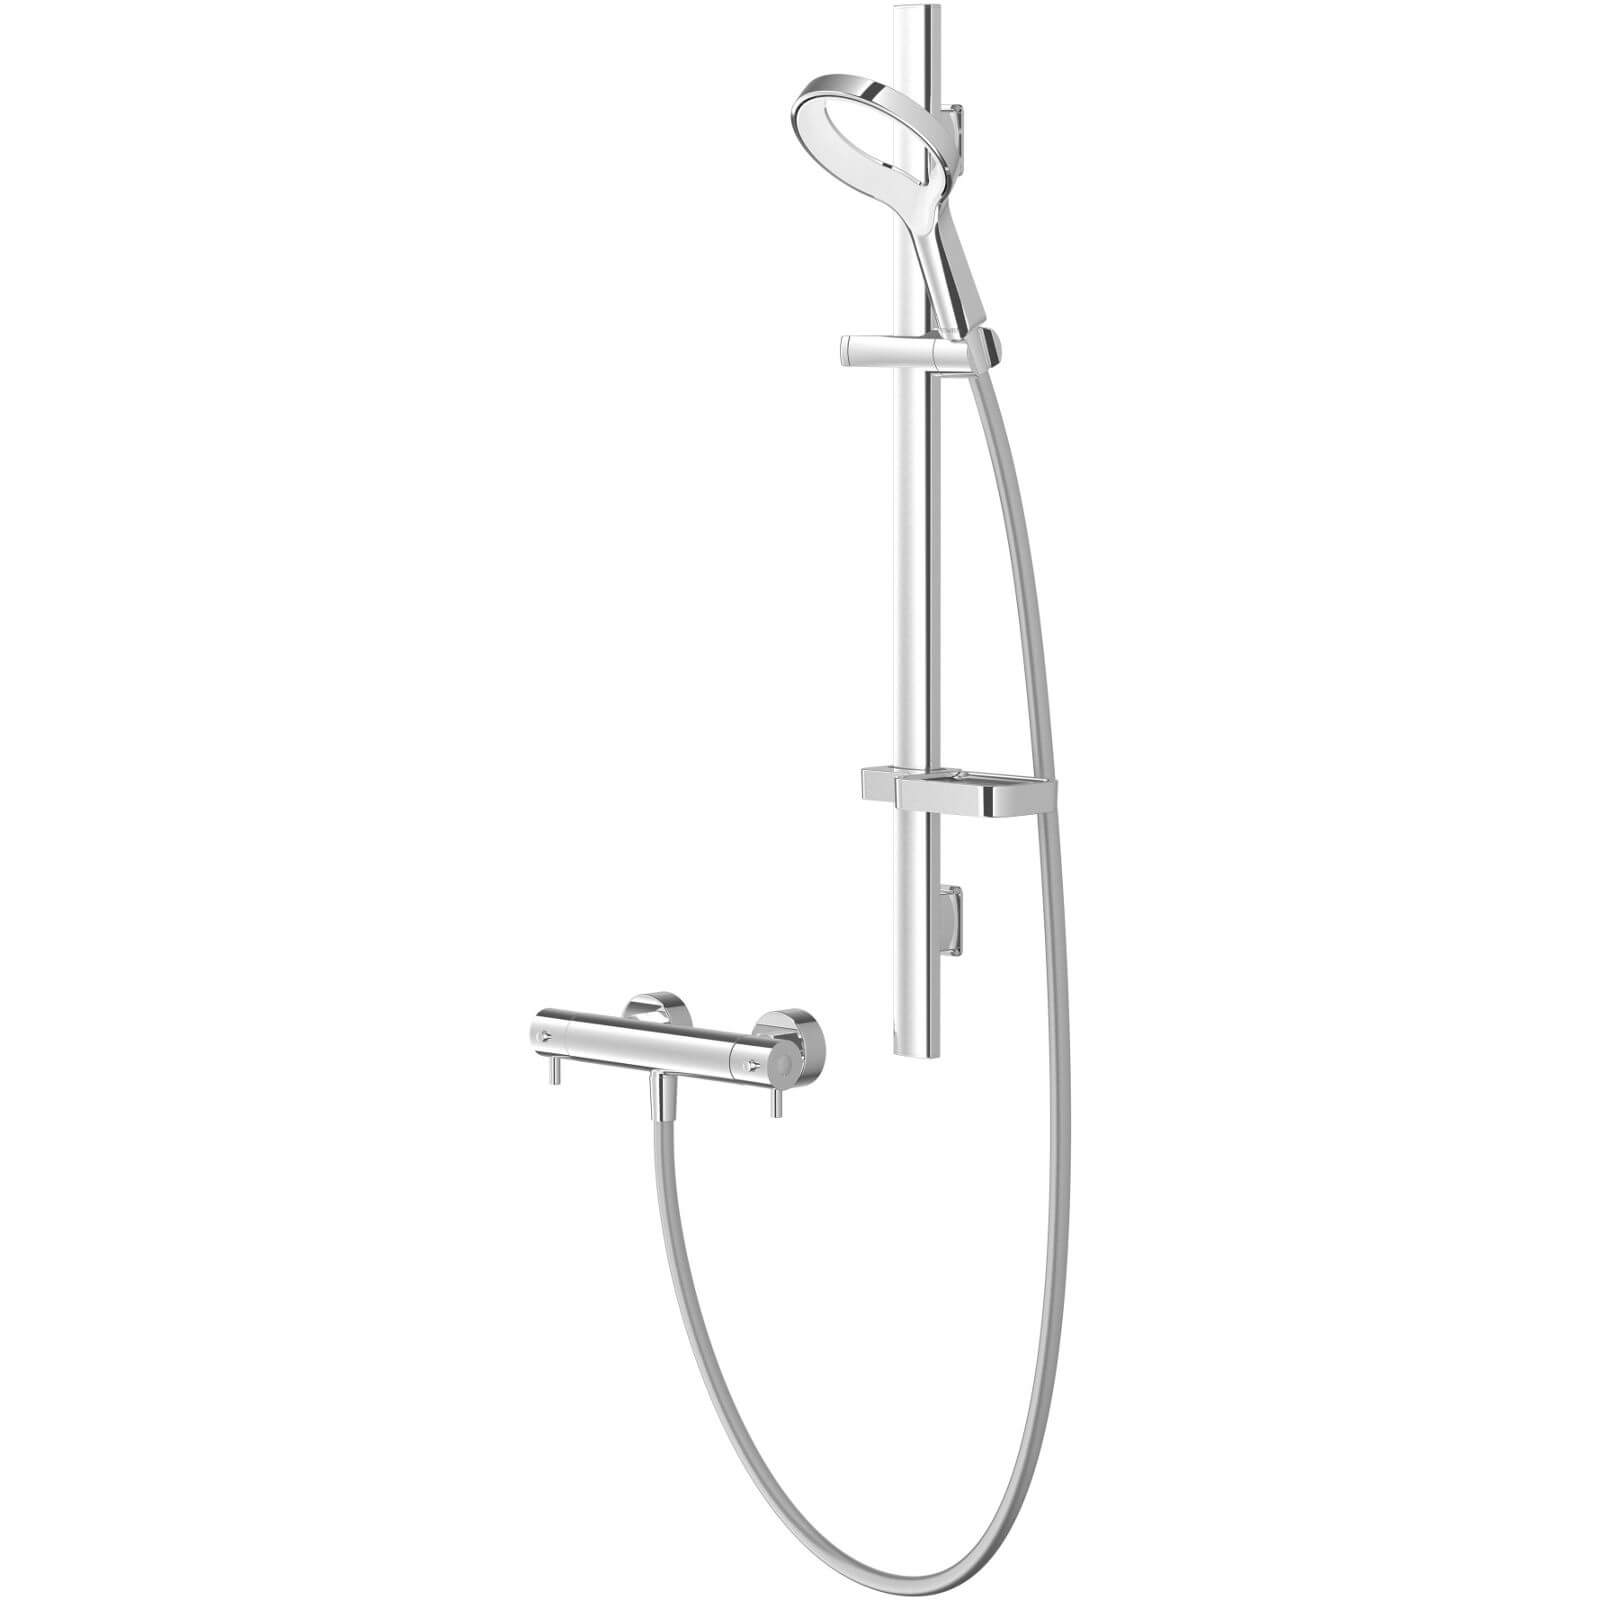 Methven Aio Aurajet Cool Touch Bar Shower - Chrome & White